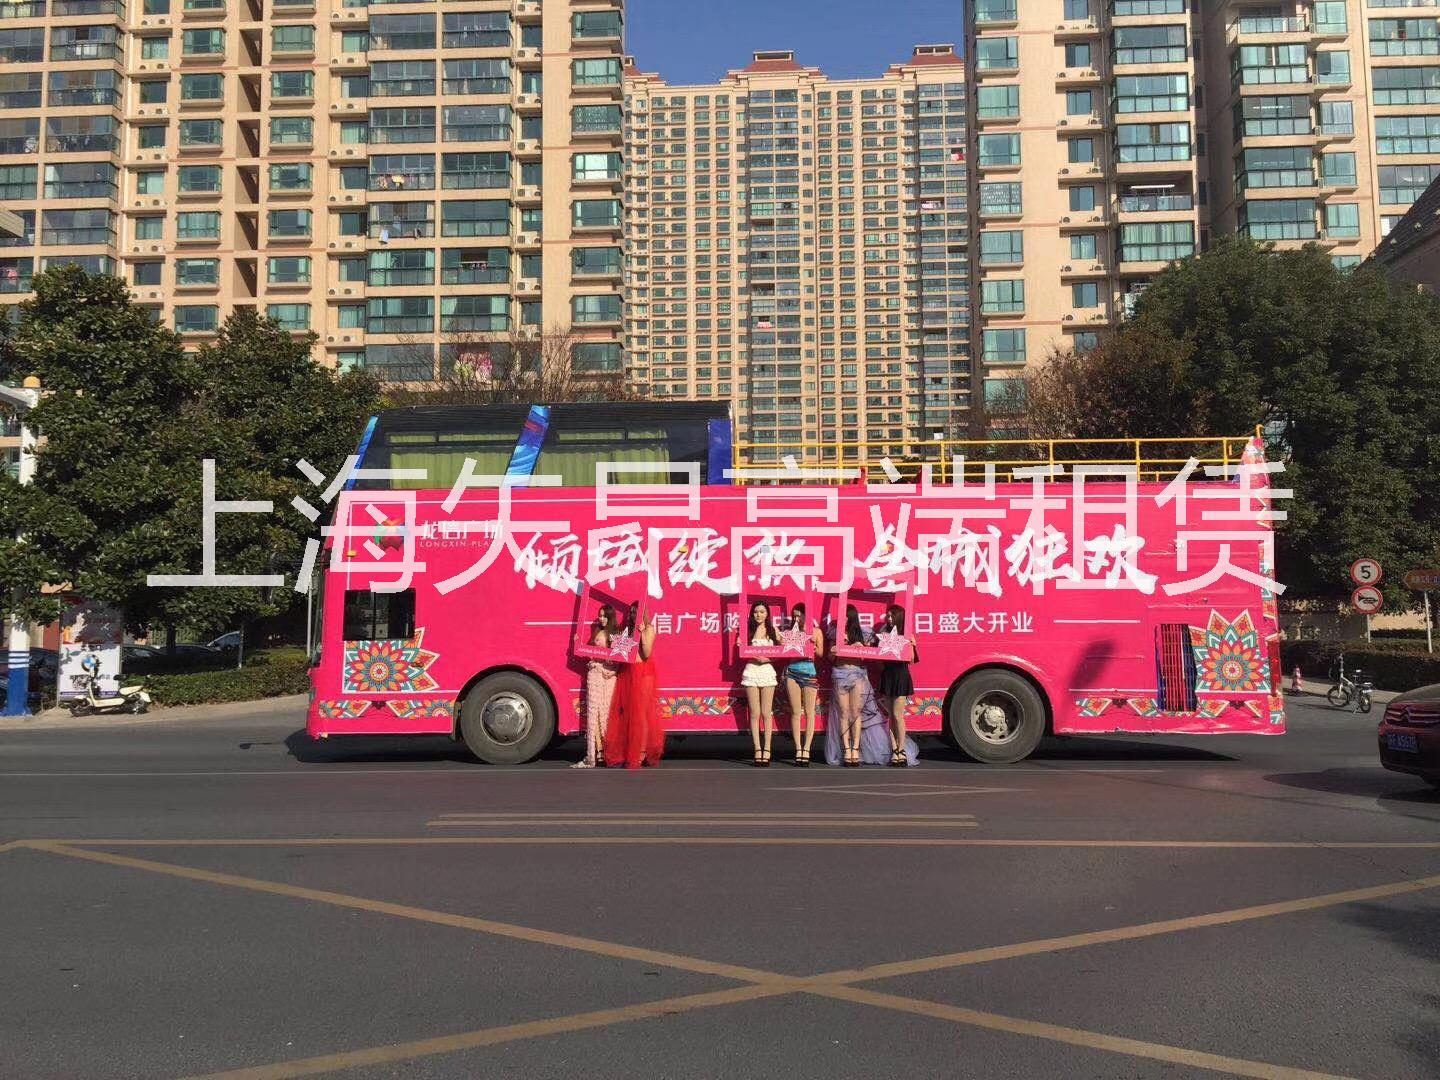 上海市江浙巴士租赁公司双层巴士出租服务厂家